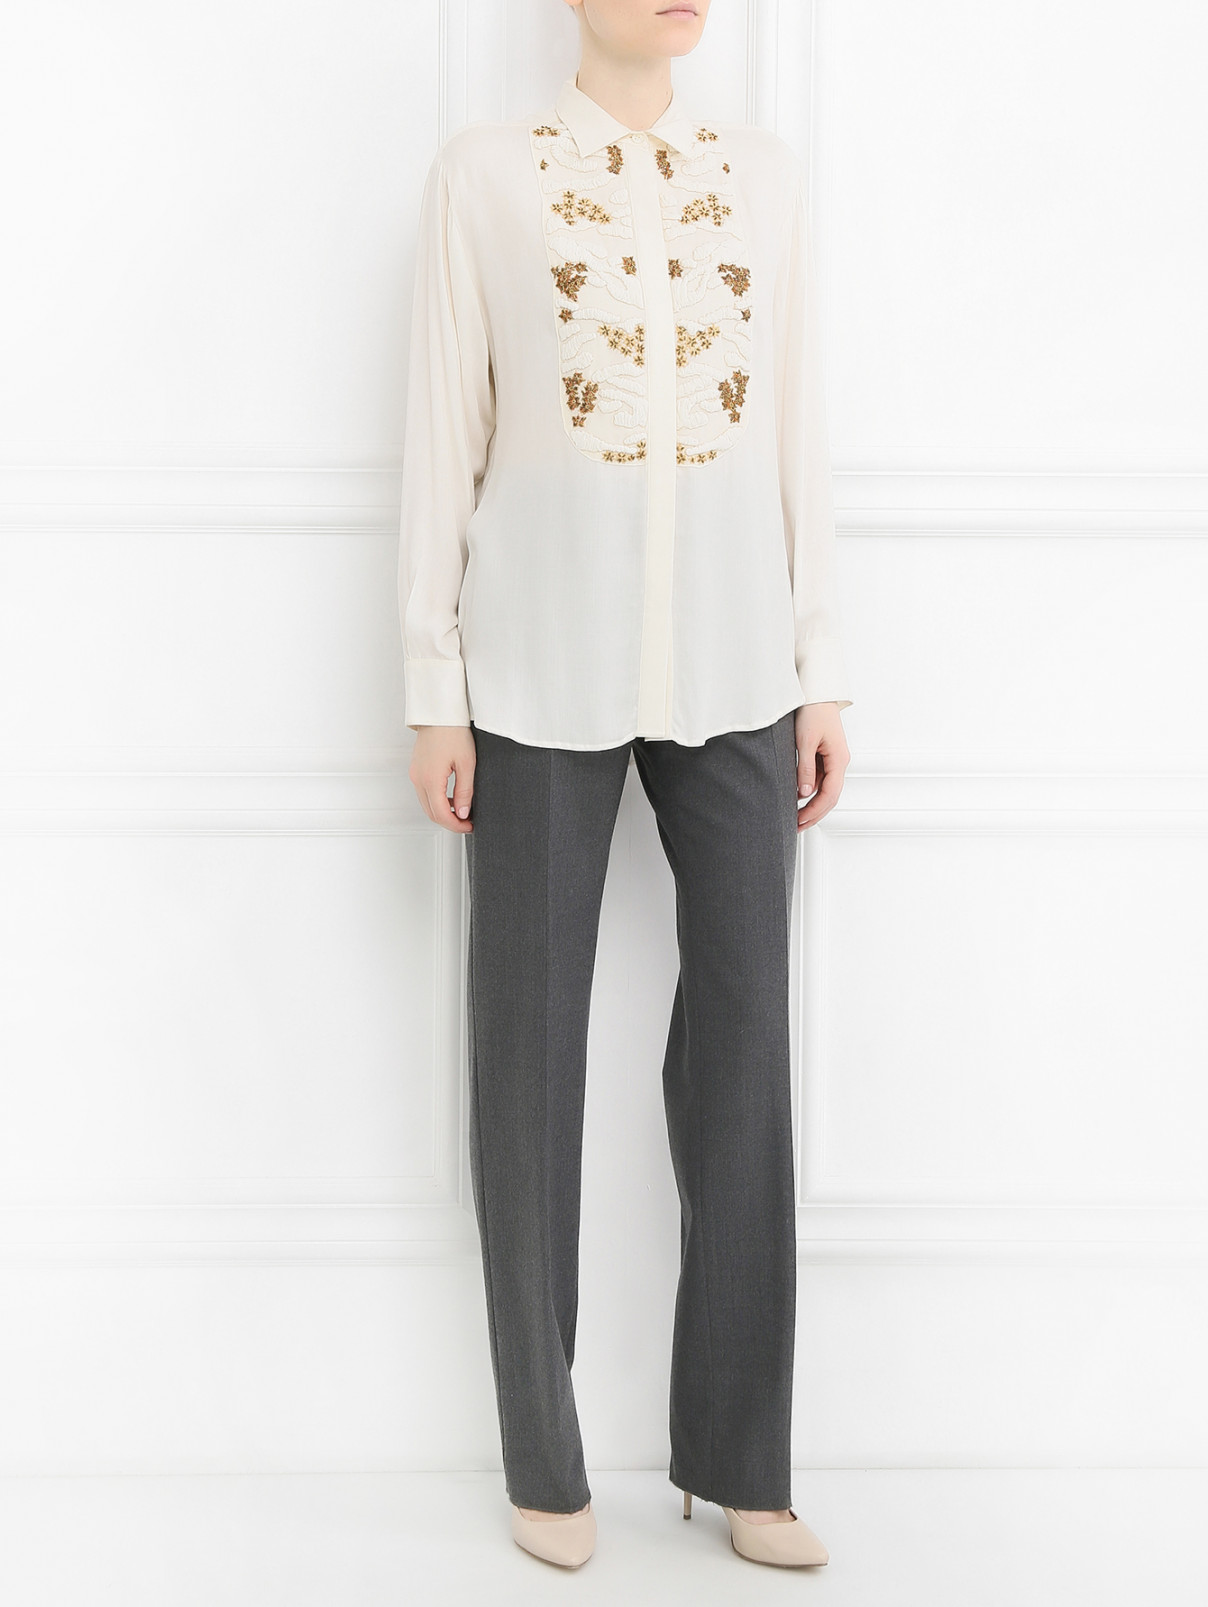 Блуза с аппликацией декорированная бисером Paul&Joe  –  Модель Общий вид  – Цвет:  Бежевый